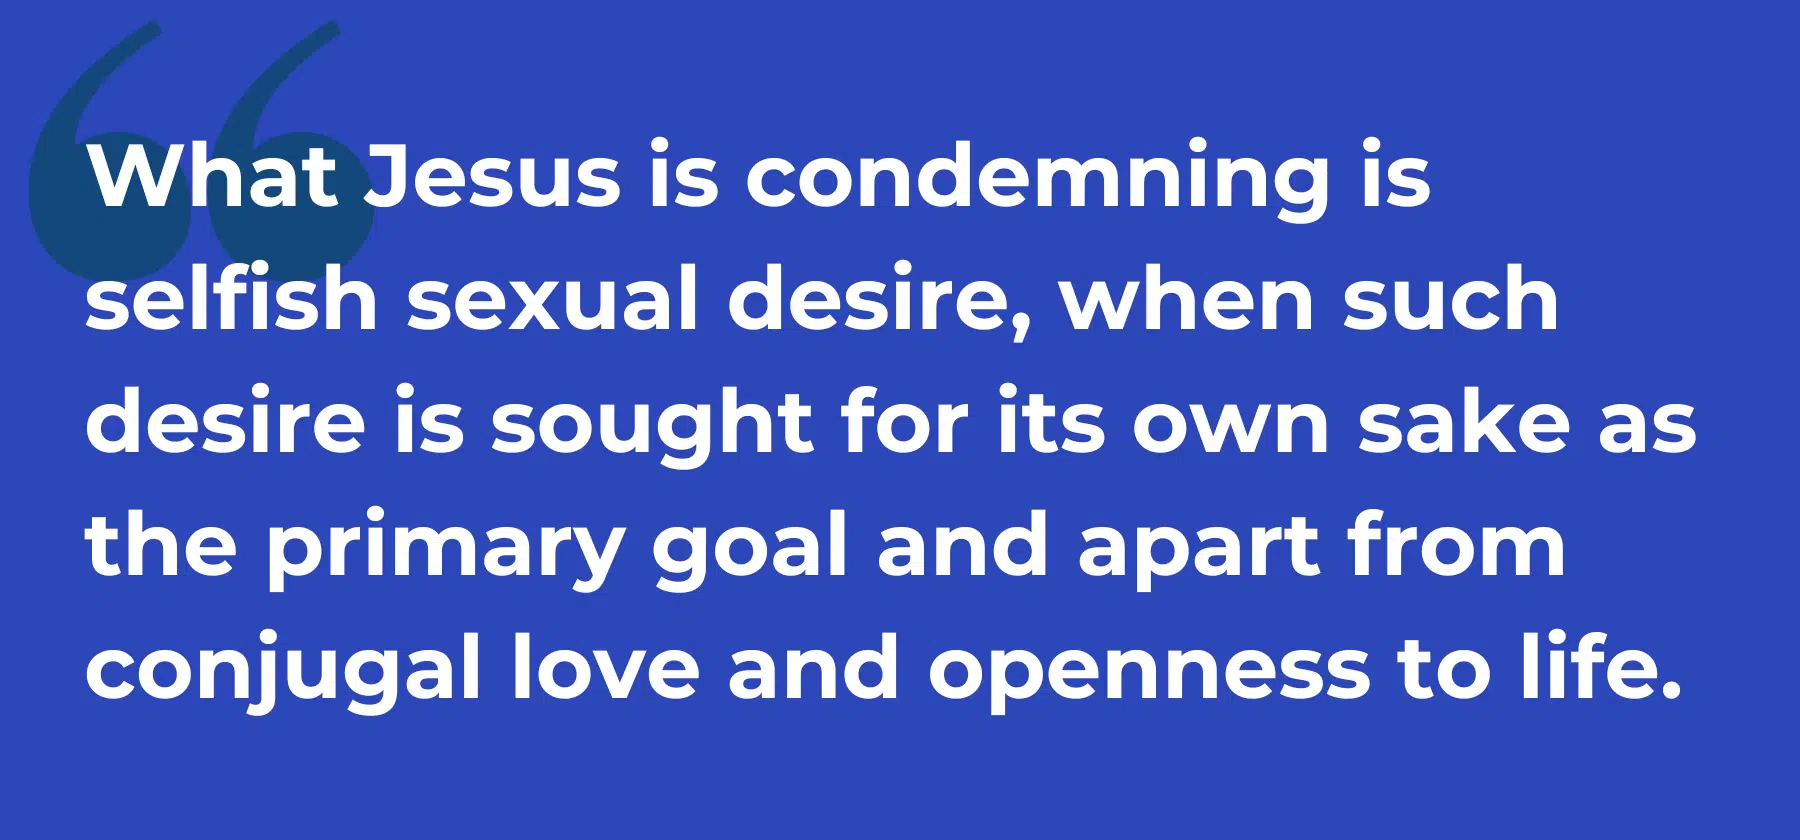 Jesus condemns selfish sexual desire